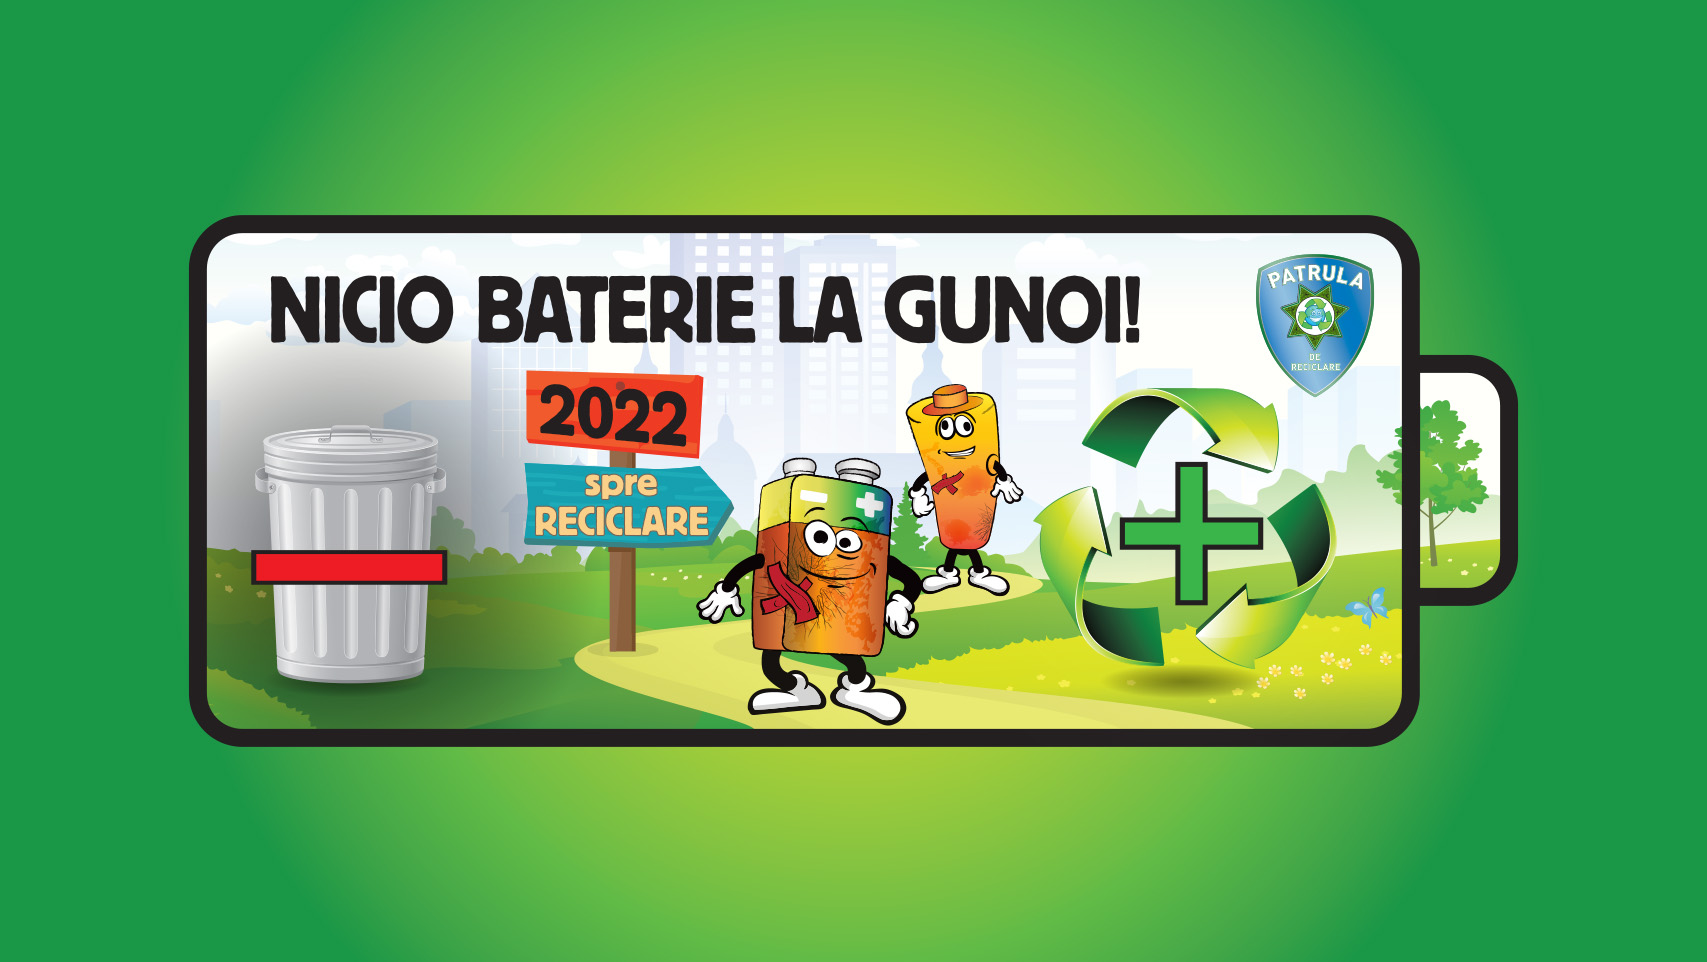 Restless Discrepancy sponsor Colectarea bateriilor uzate - concurs național 2022 Patrula de Reciclare